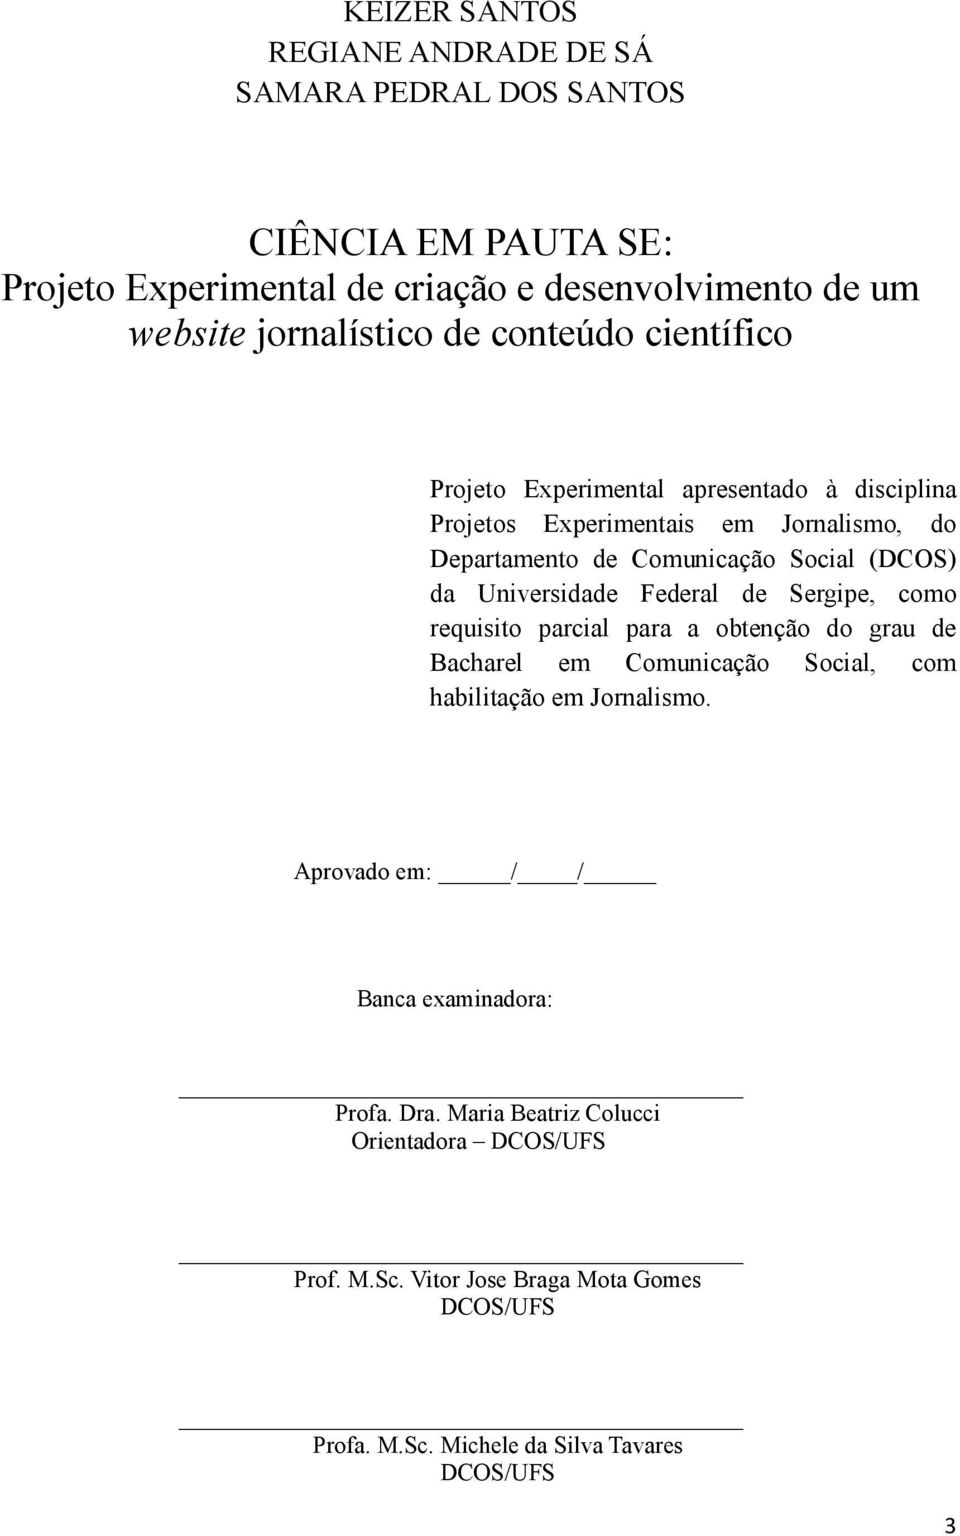 Universidade Federal de Sergipe, como requisito parcial para a obtenção do grau de Bacharel em Comunicação Social, com habilitação em Jornalismo.